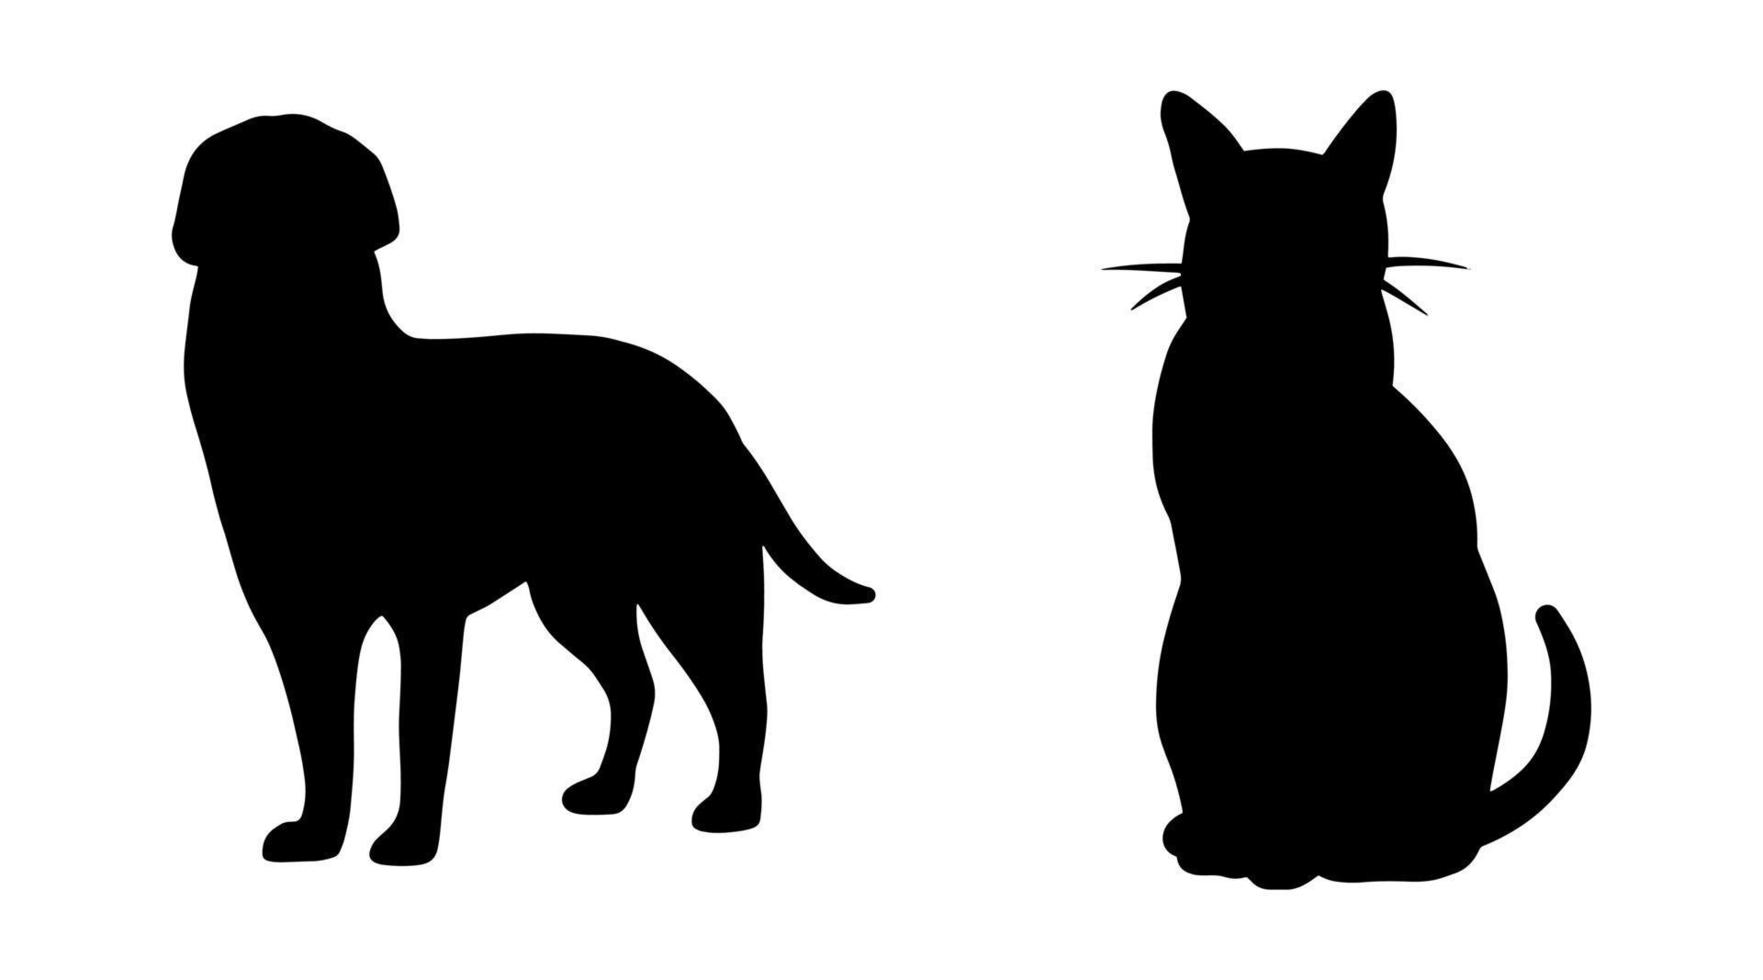 vektor isolerade djur siluett ikon. enkel svart formuppsättning. katt och hund grafisk illustration. abstrakt symbol tecken designelement. veterinärklinikens logotyp. husdjur porträtt skugga platt stil.